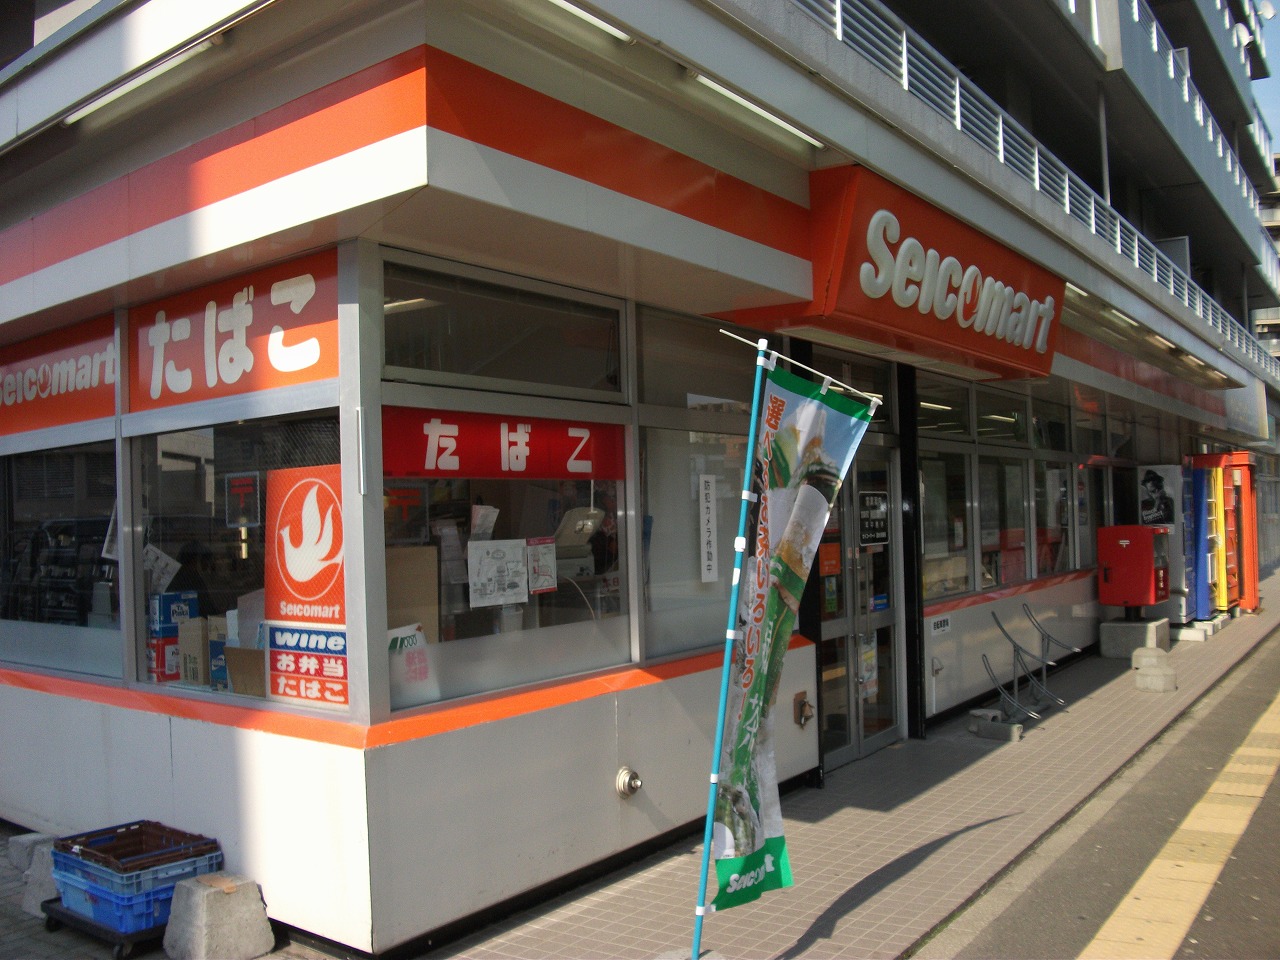 Convenience store. Seicomart Kobayashi Hassamu 126m to the store (convenience store)